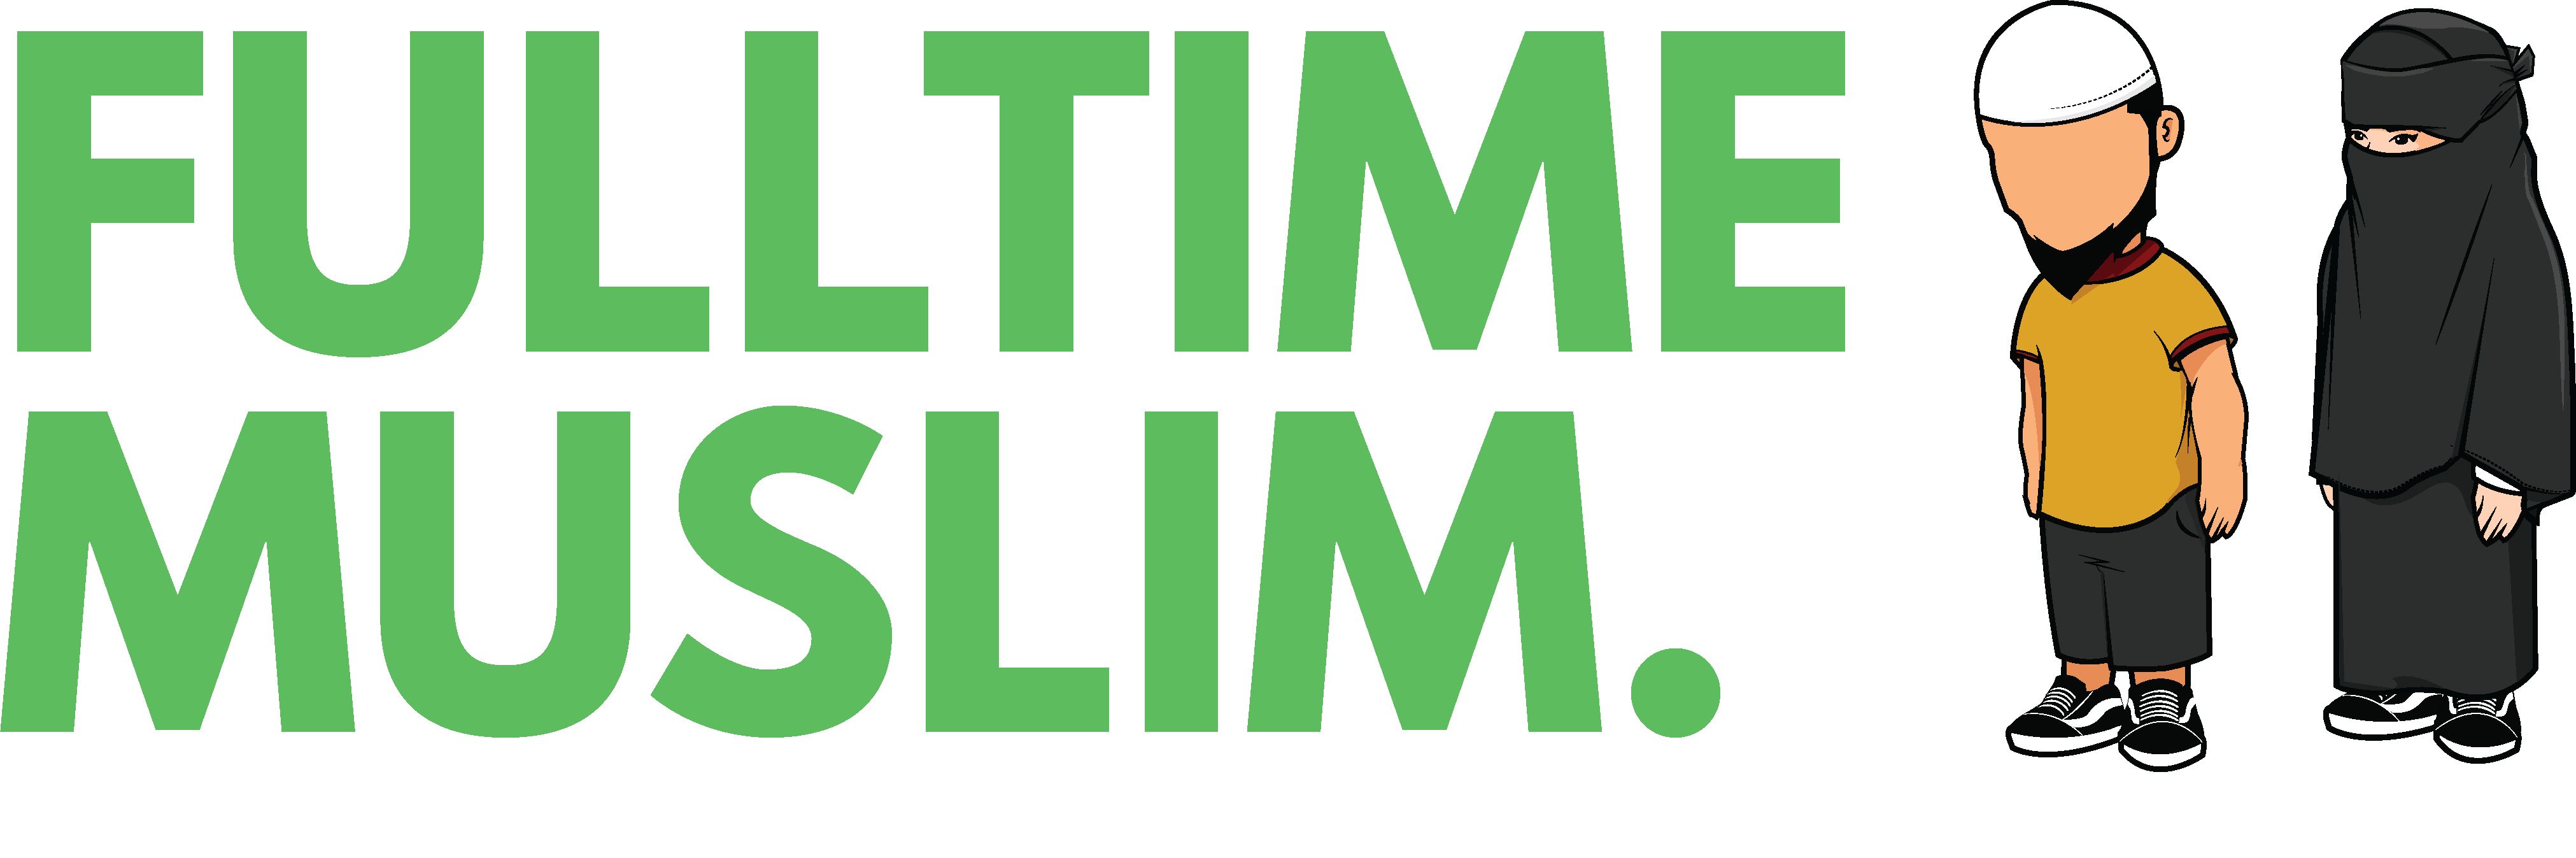 Fulltime Muslim